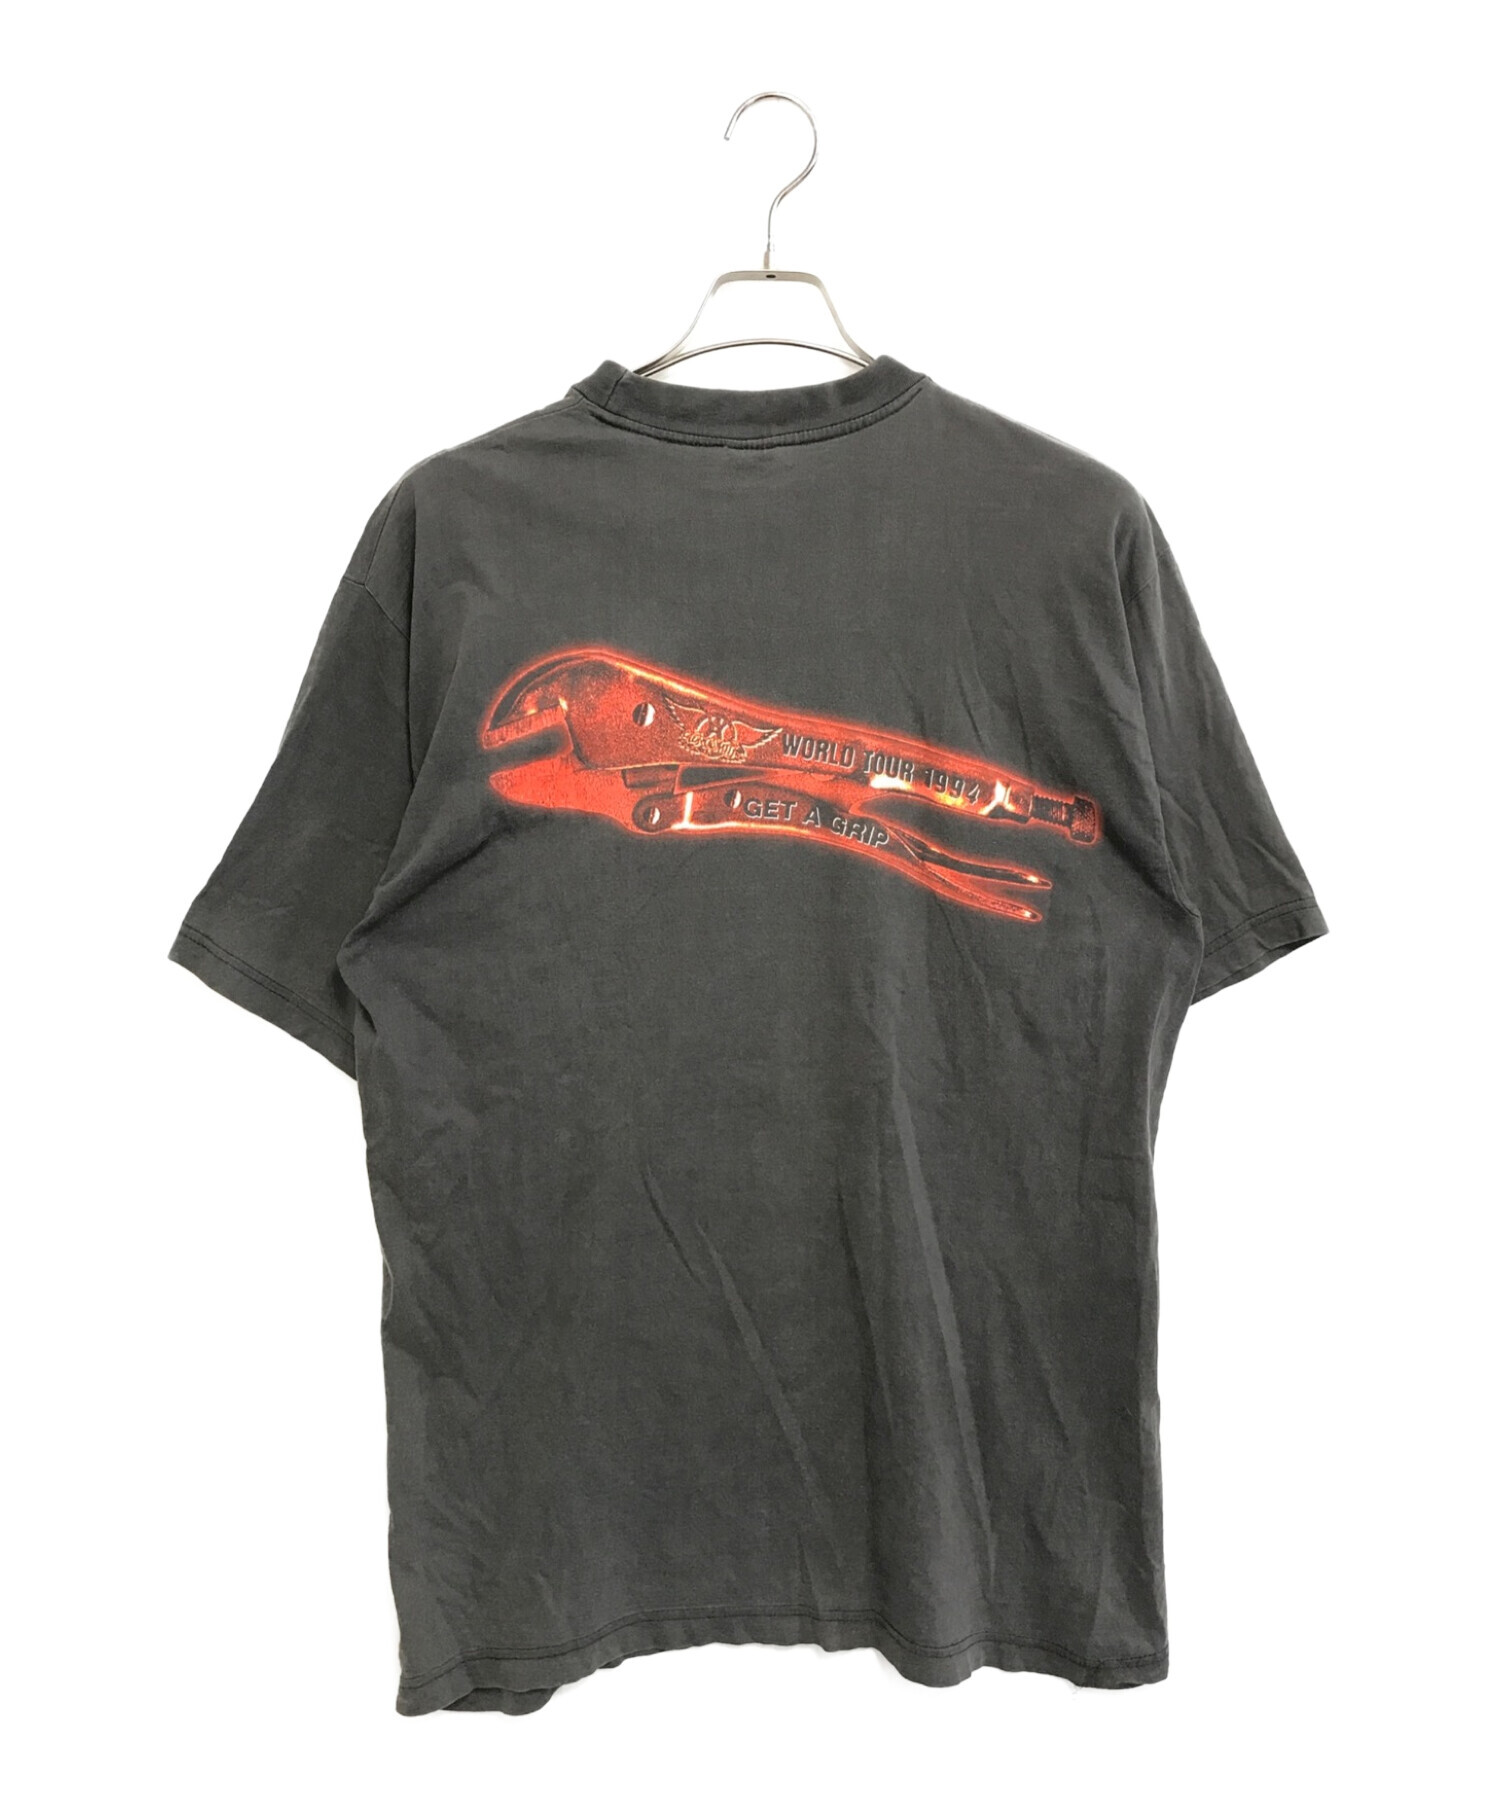 バンドTシャツ (バンドTシャツ) [古着]90's aerosmith(エアロスミス) バンドTシャツ ブラック サイズ:XL